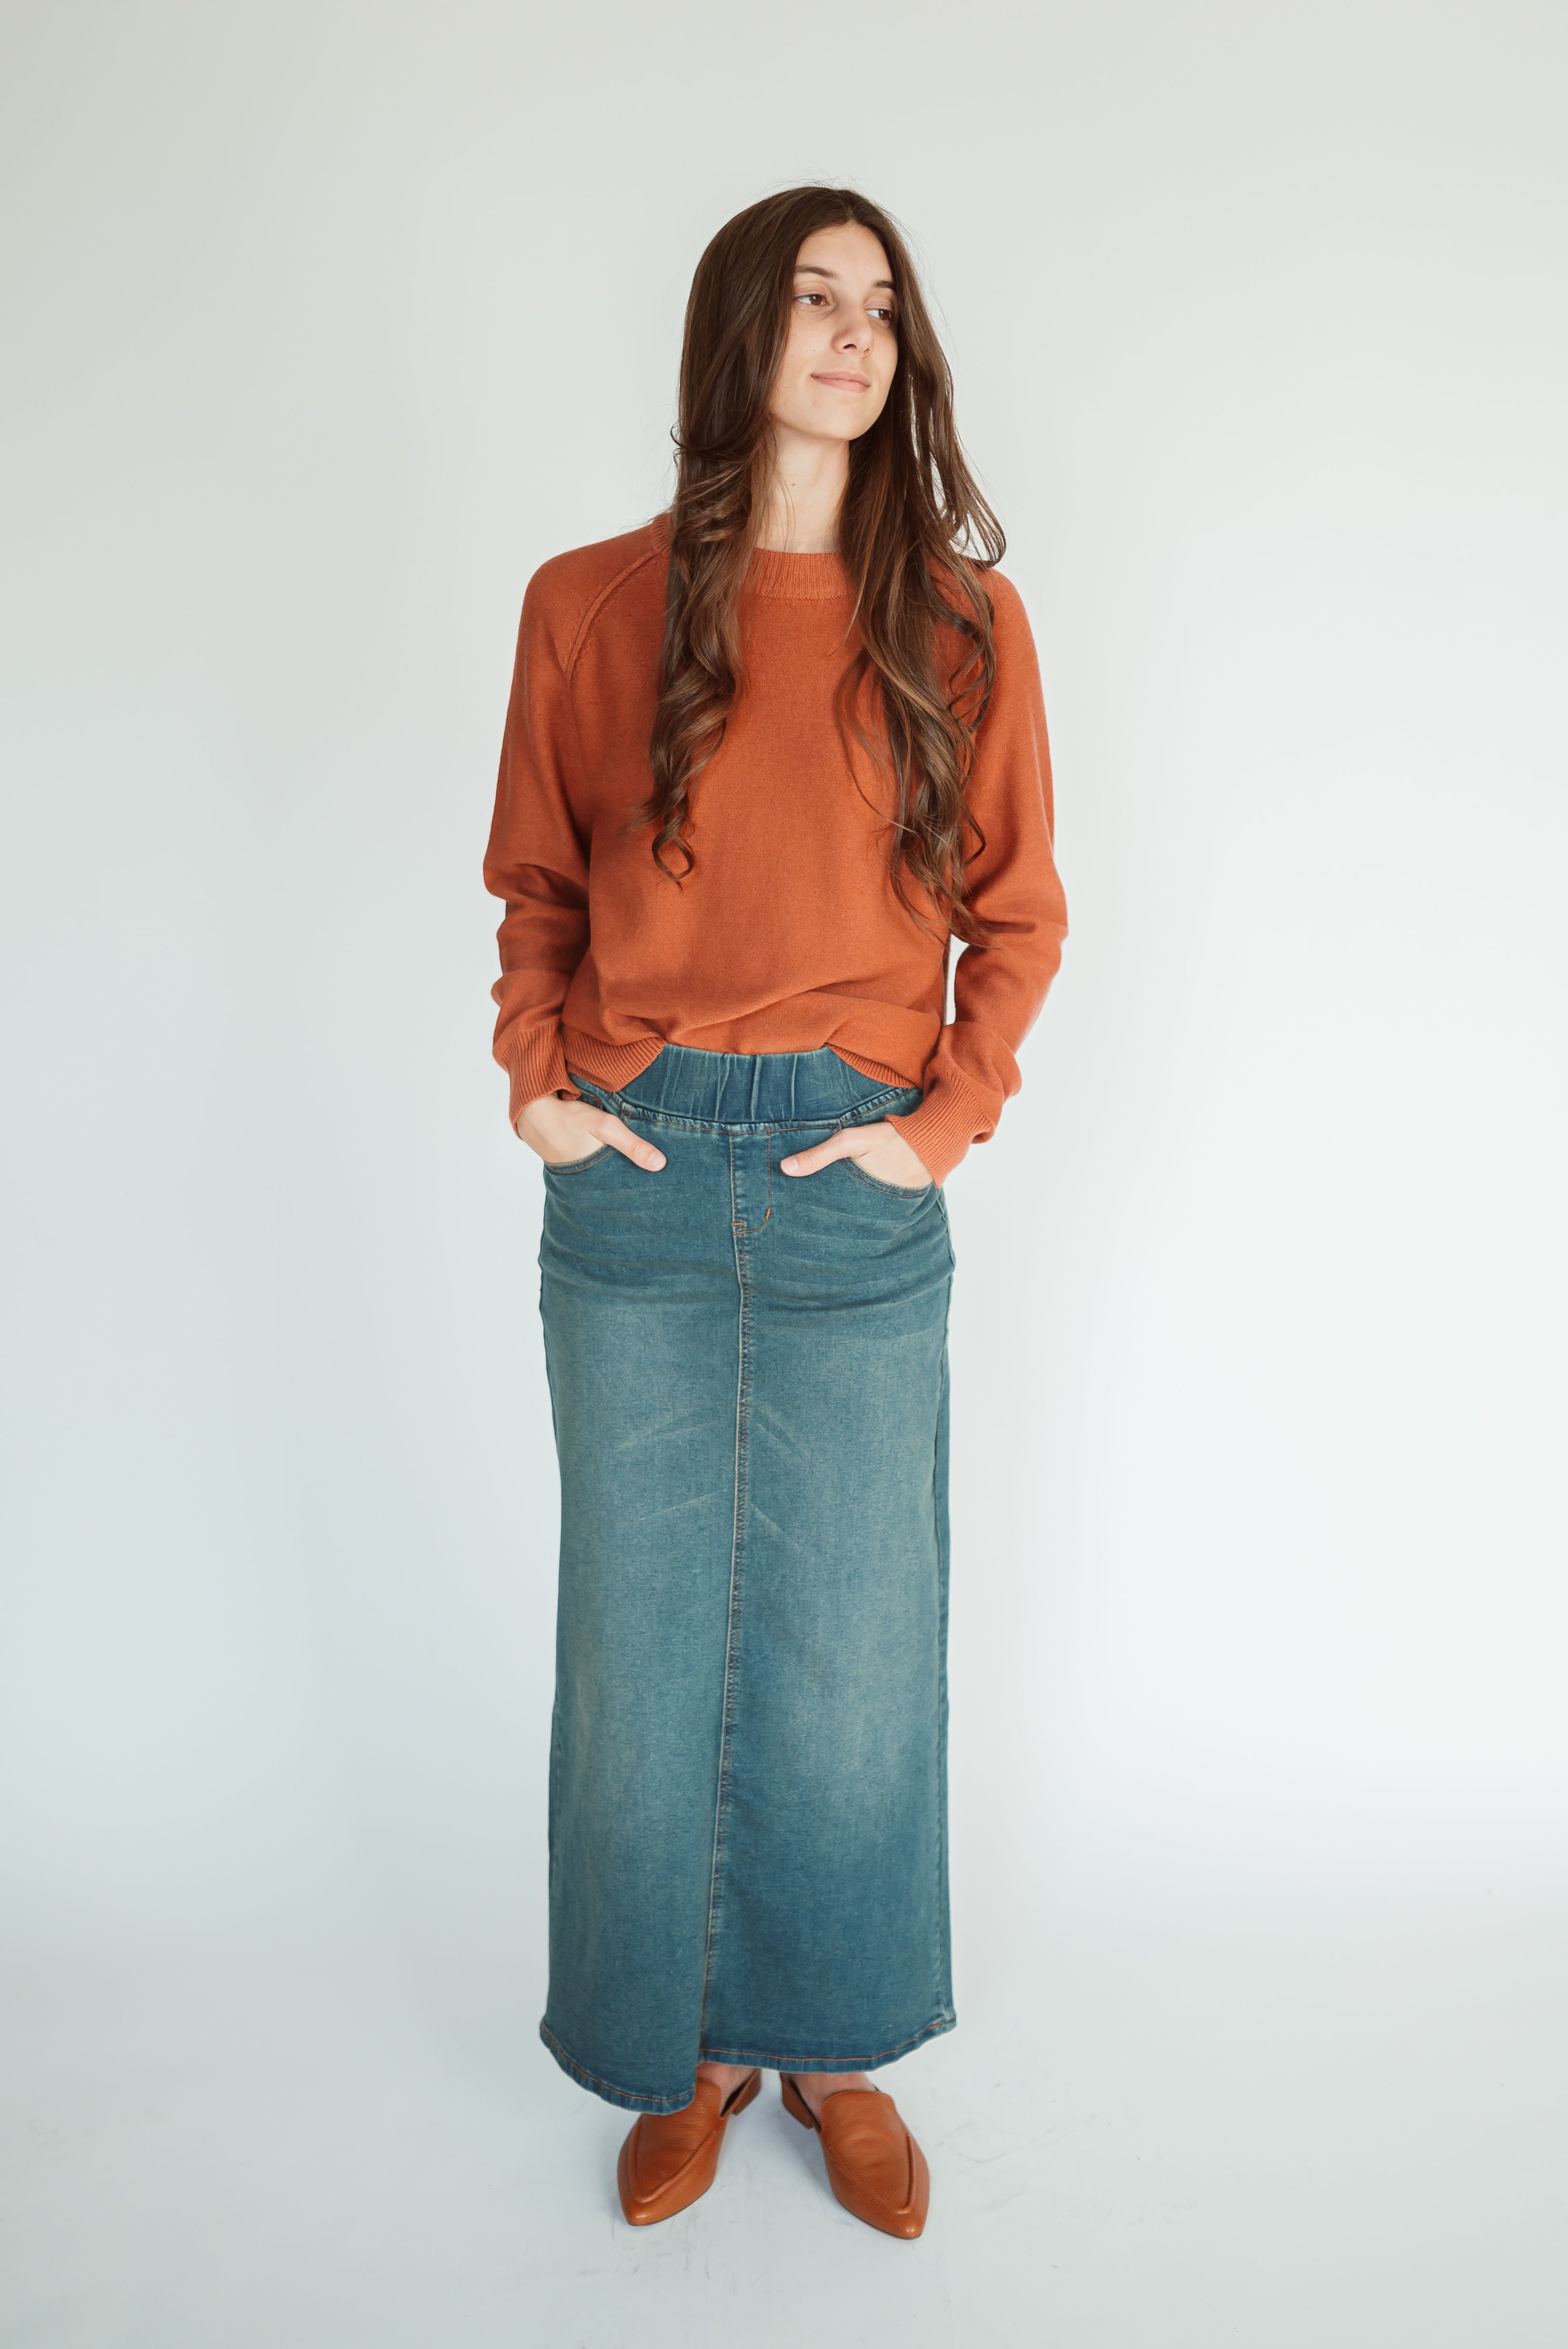 Arielle Denim Skirt in Vintage Wash - FINAL SALE